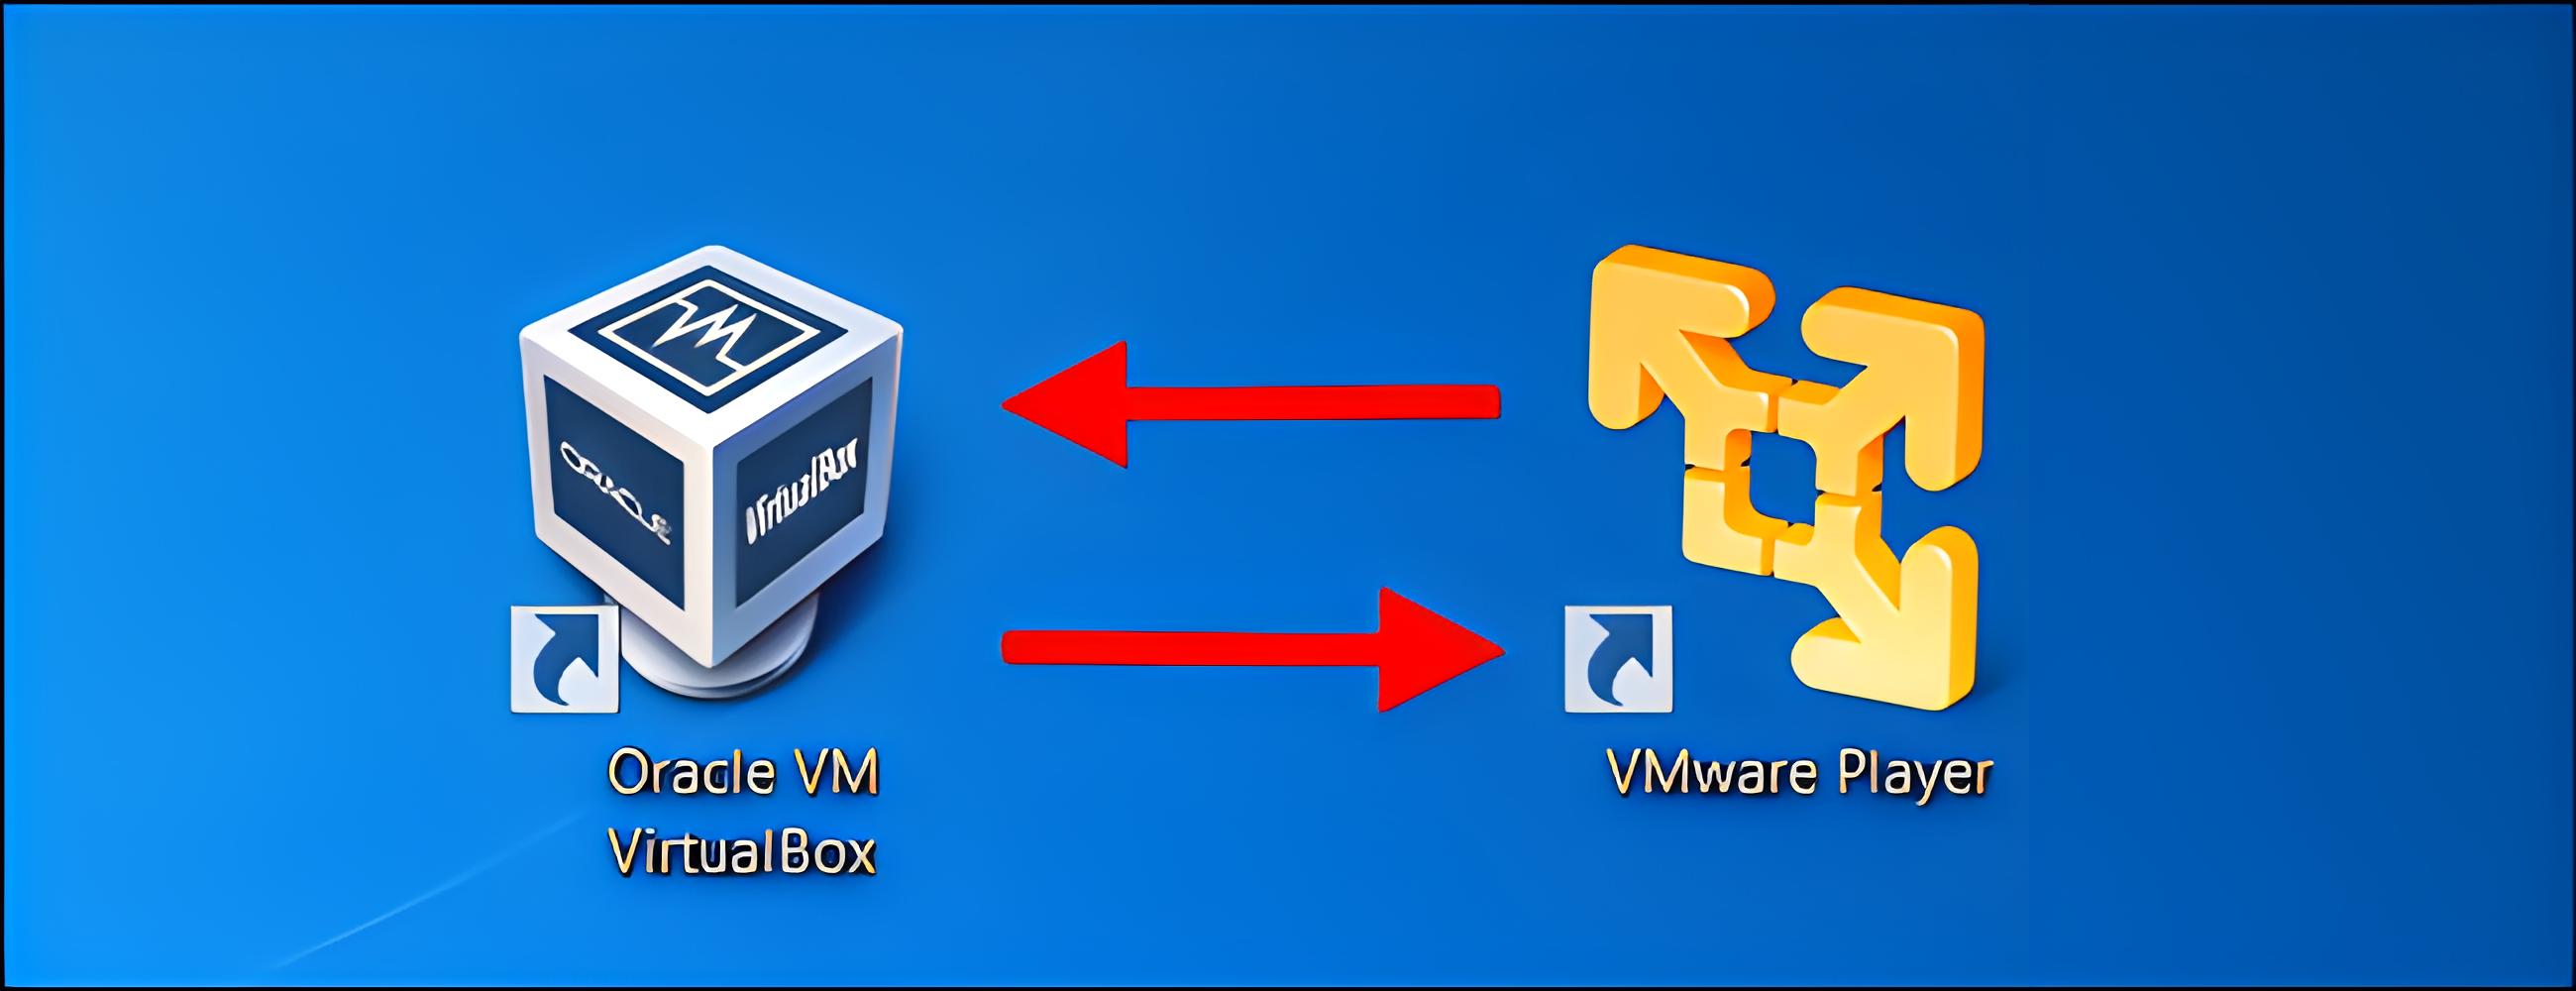 VMware虚拟机和VirtualBox虚拟机的网络连通方法